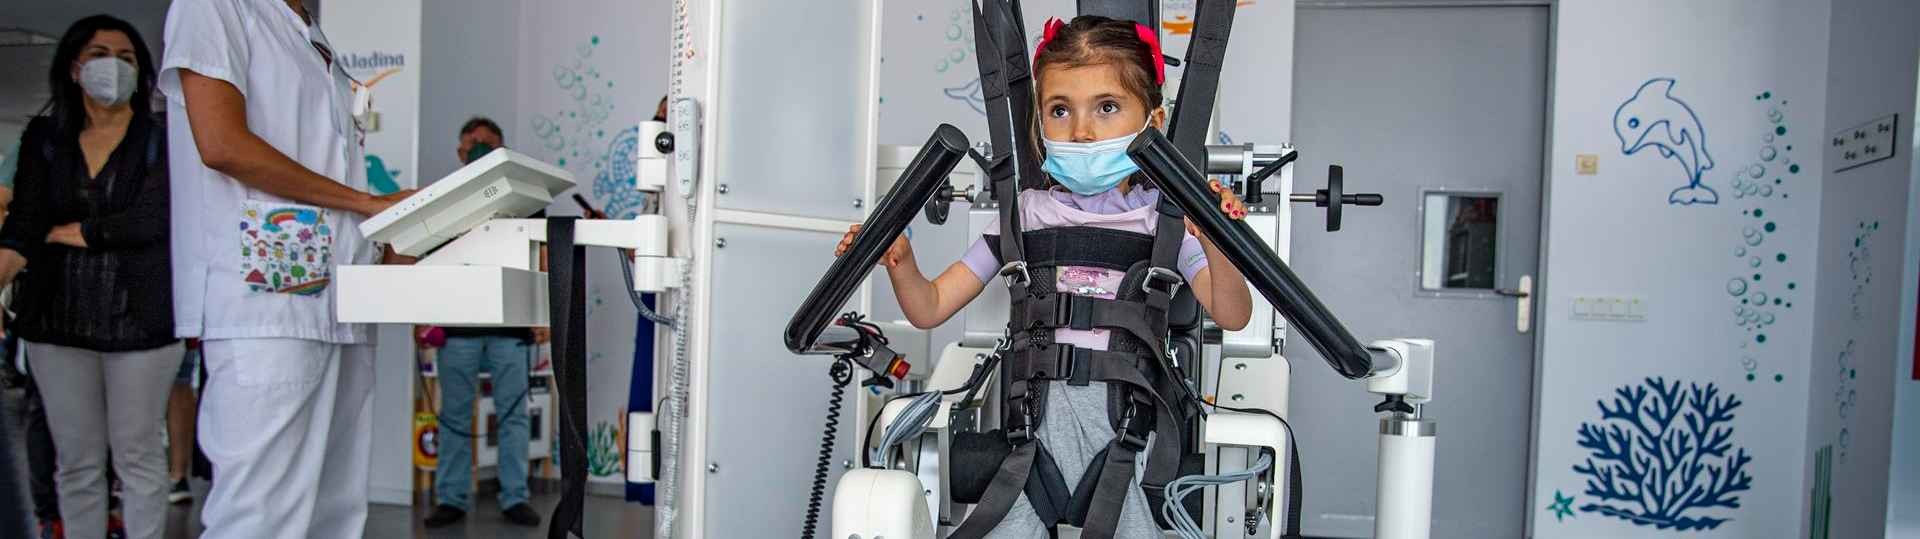 Nuevo sistema robótico que ayuda a los niños a caminar